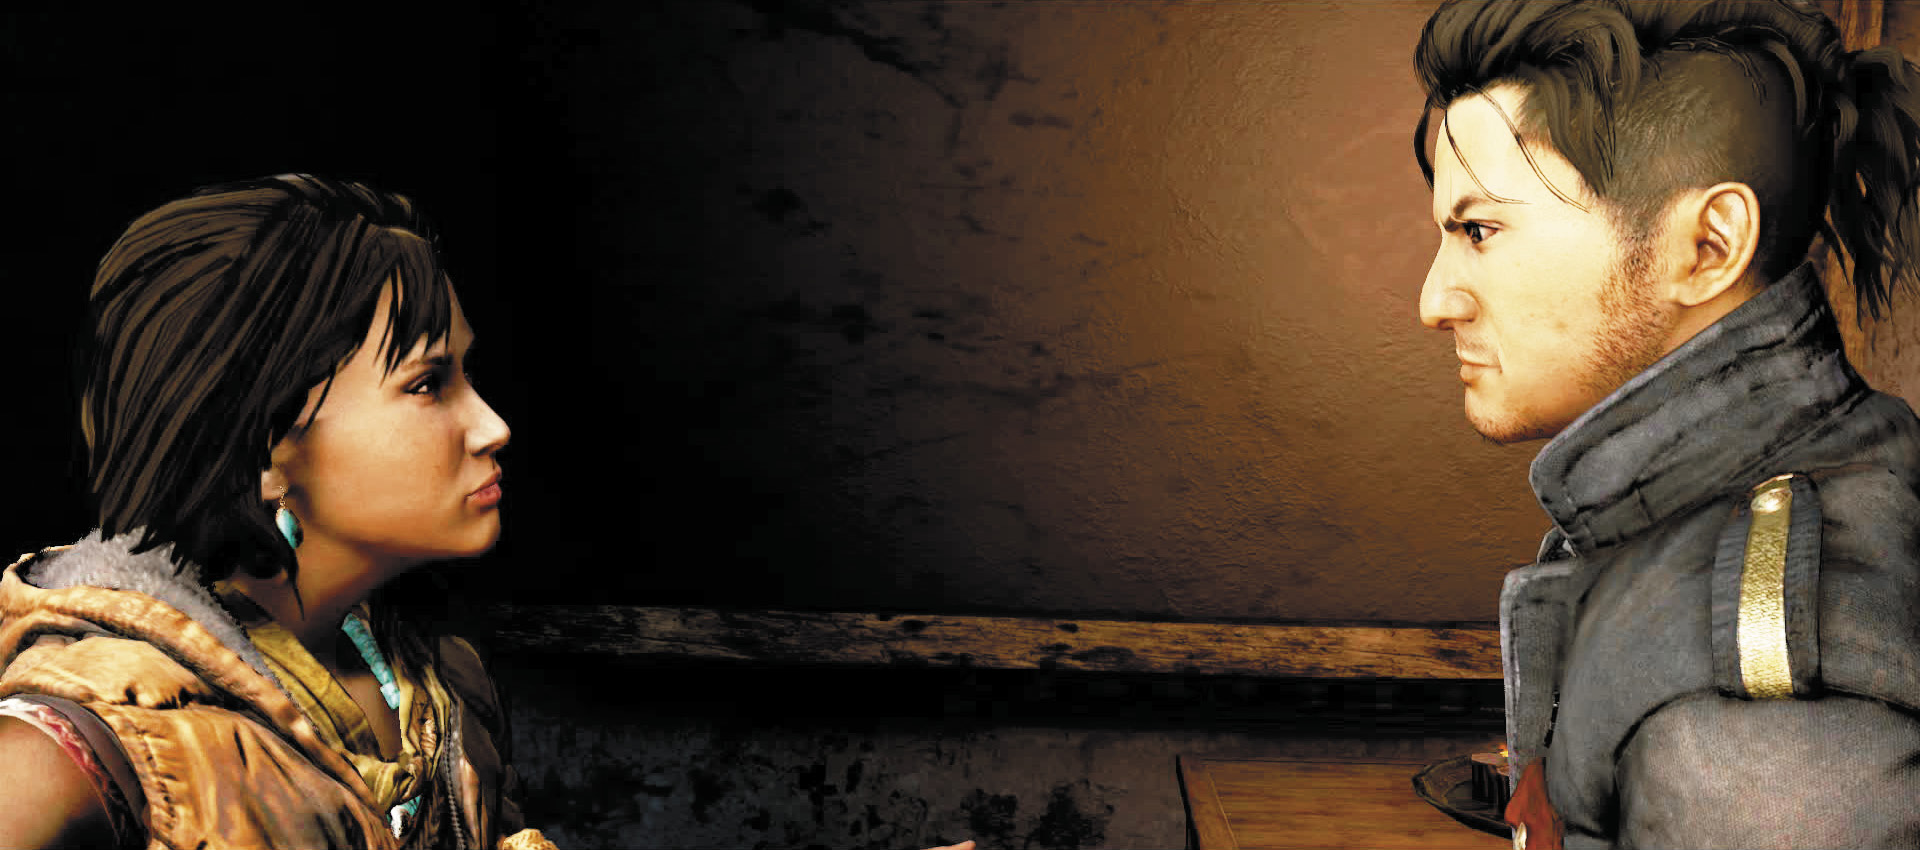 Far Cry 4 brancher avec AMITA Royaume-Uni sites de rencontres pour 16 ans